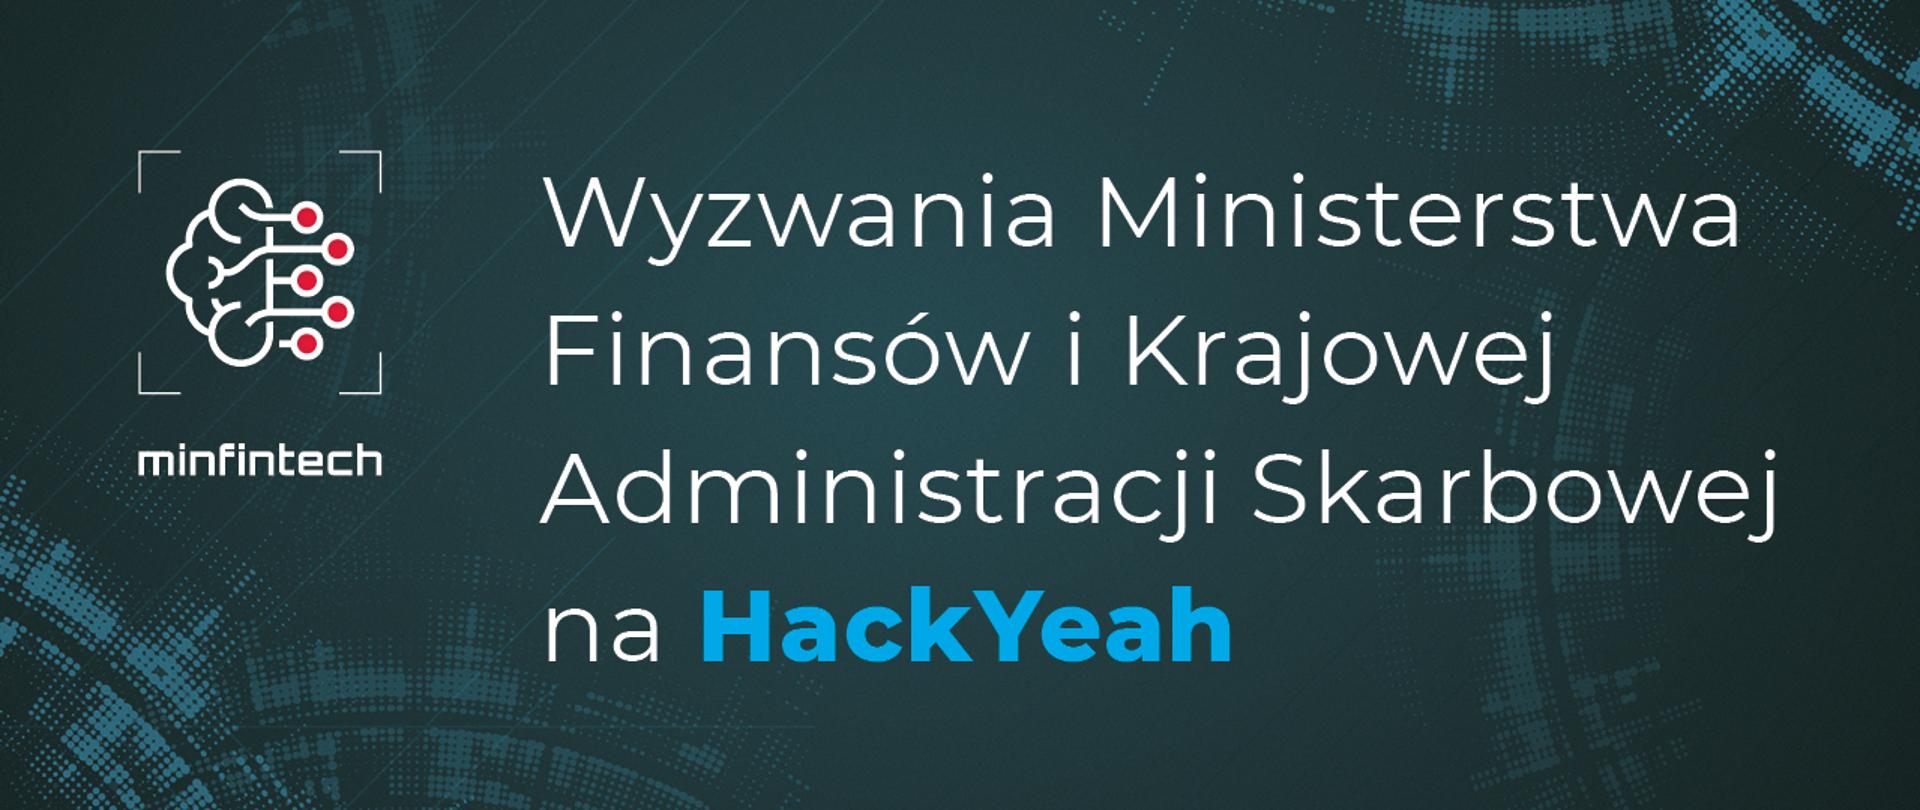 Plansza z napisem Wyzwania Ministerstwa Finansów i Krajowej Administracji Skarbowej na HackYeah